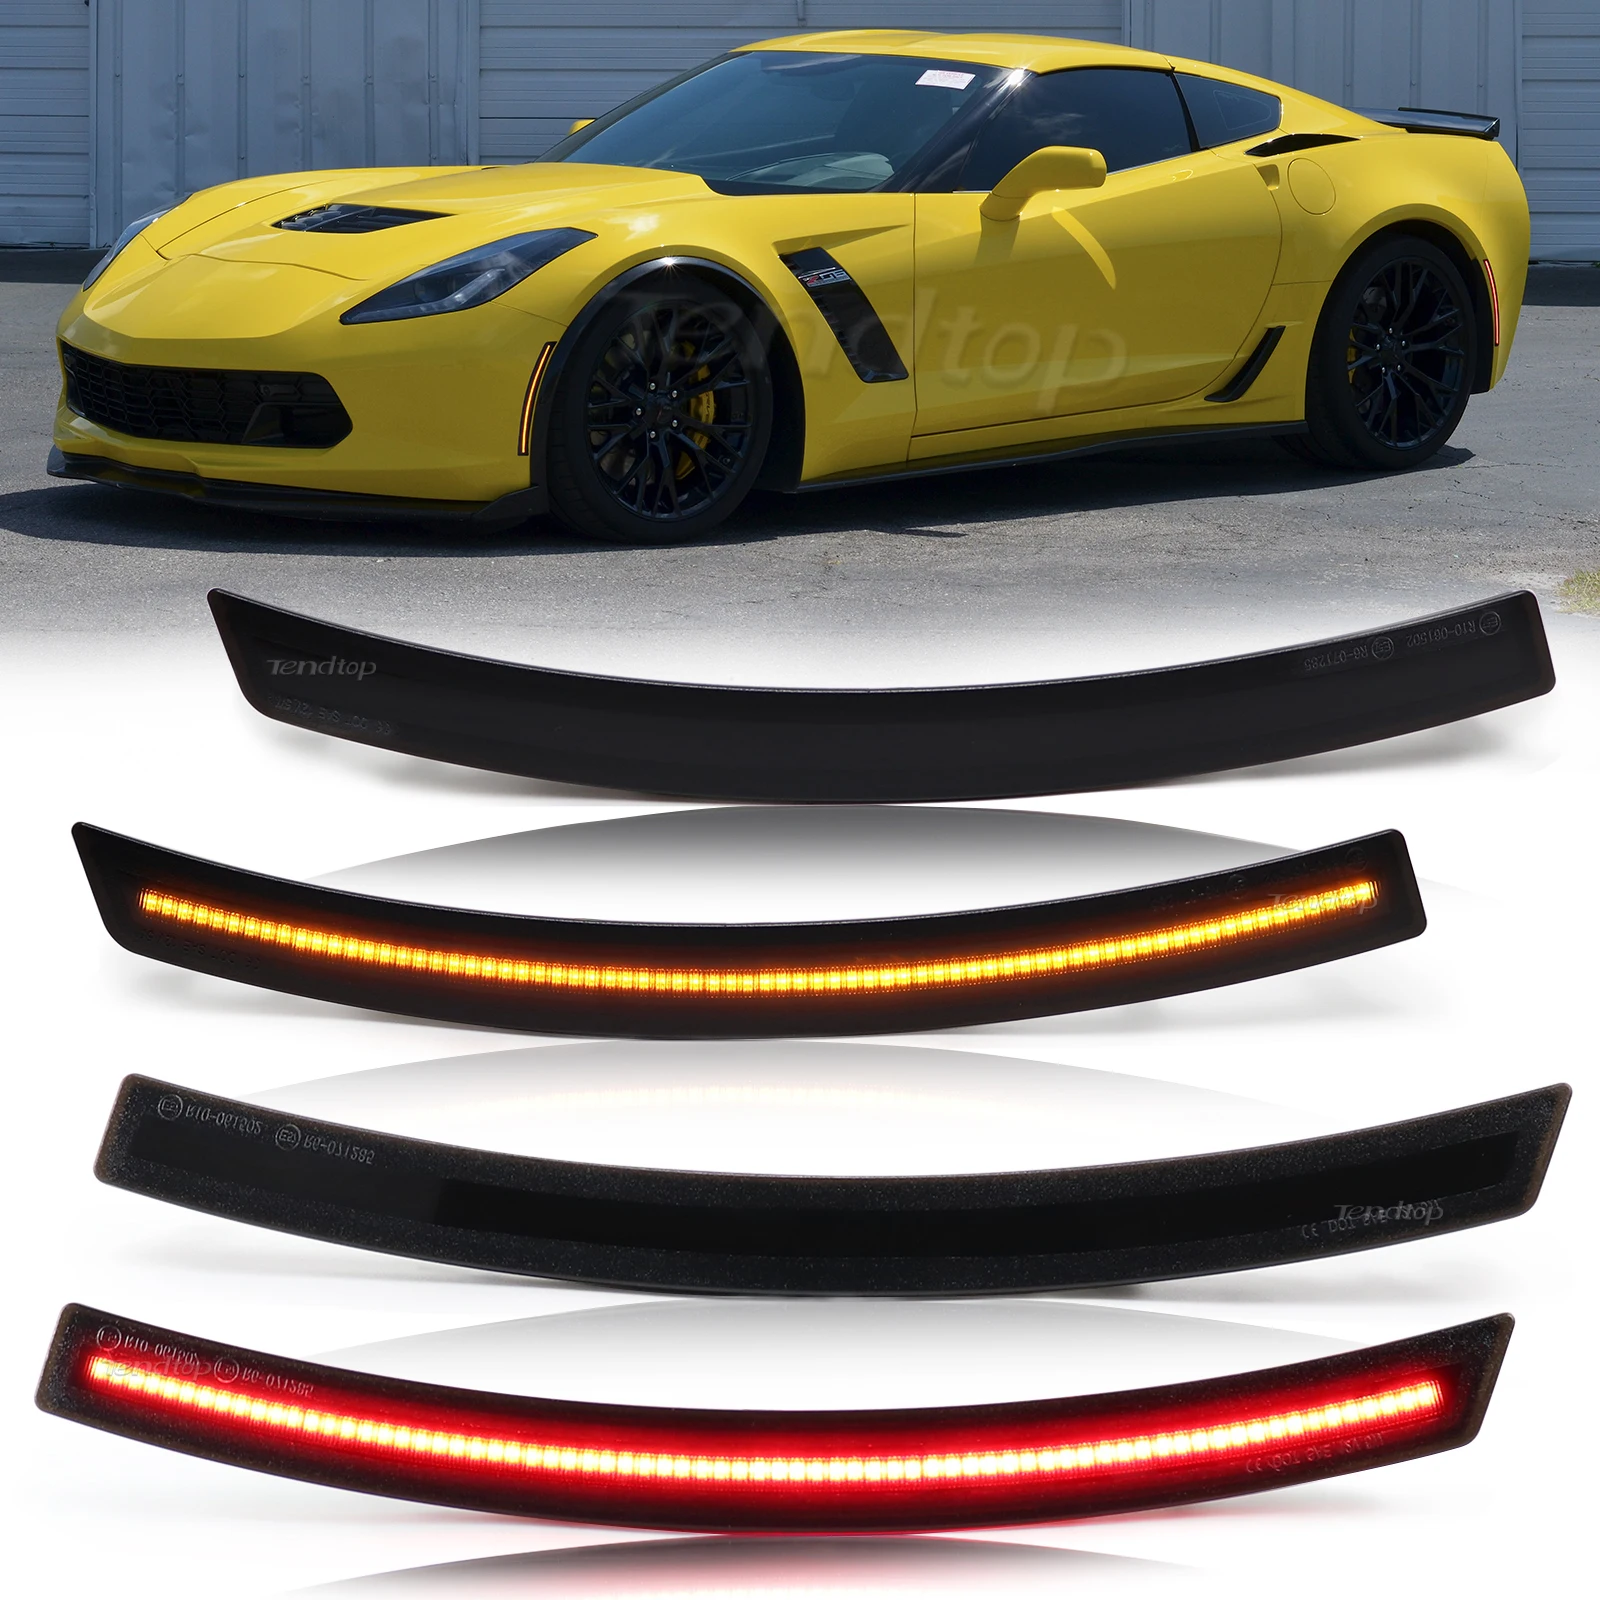 

4Pcs/Set For Chevrolet Corvette C7 2014 2015 2016 2017 2018 2019 Car Front Rear Bumper LED Side Marker Light Smoked Fender Lamp